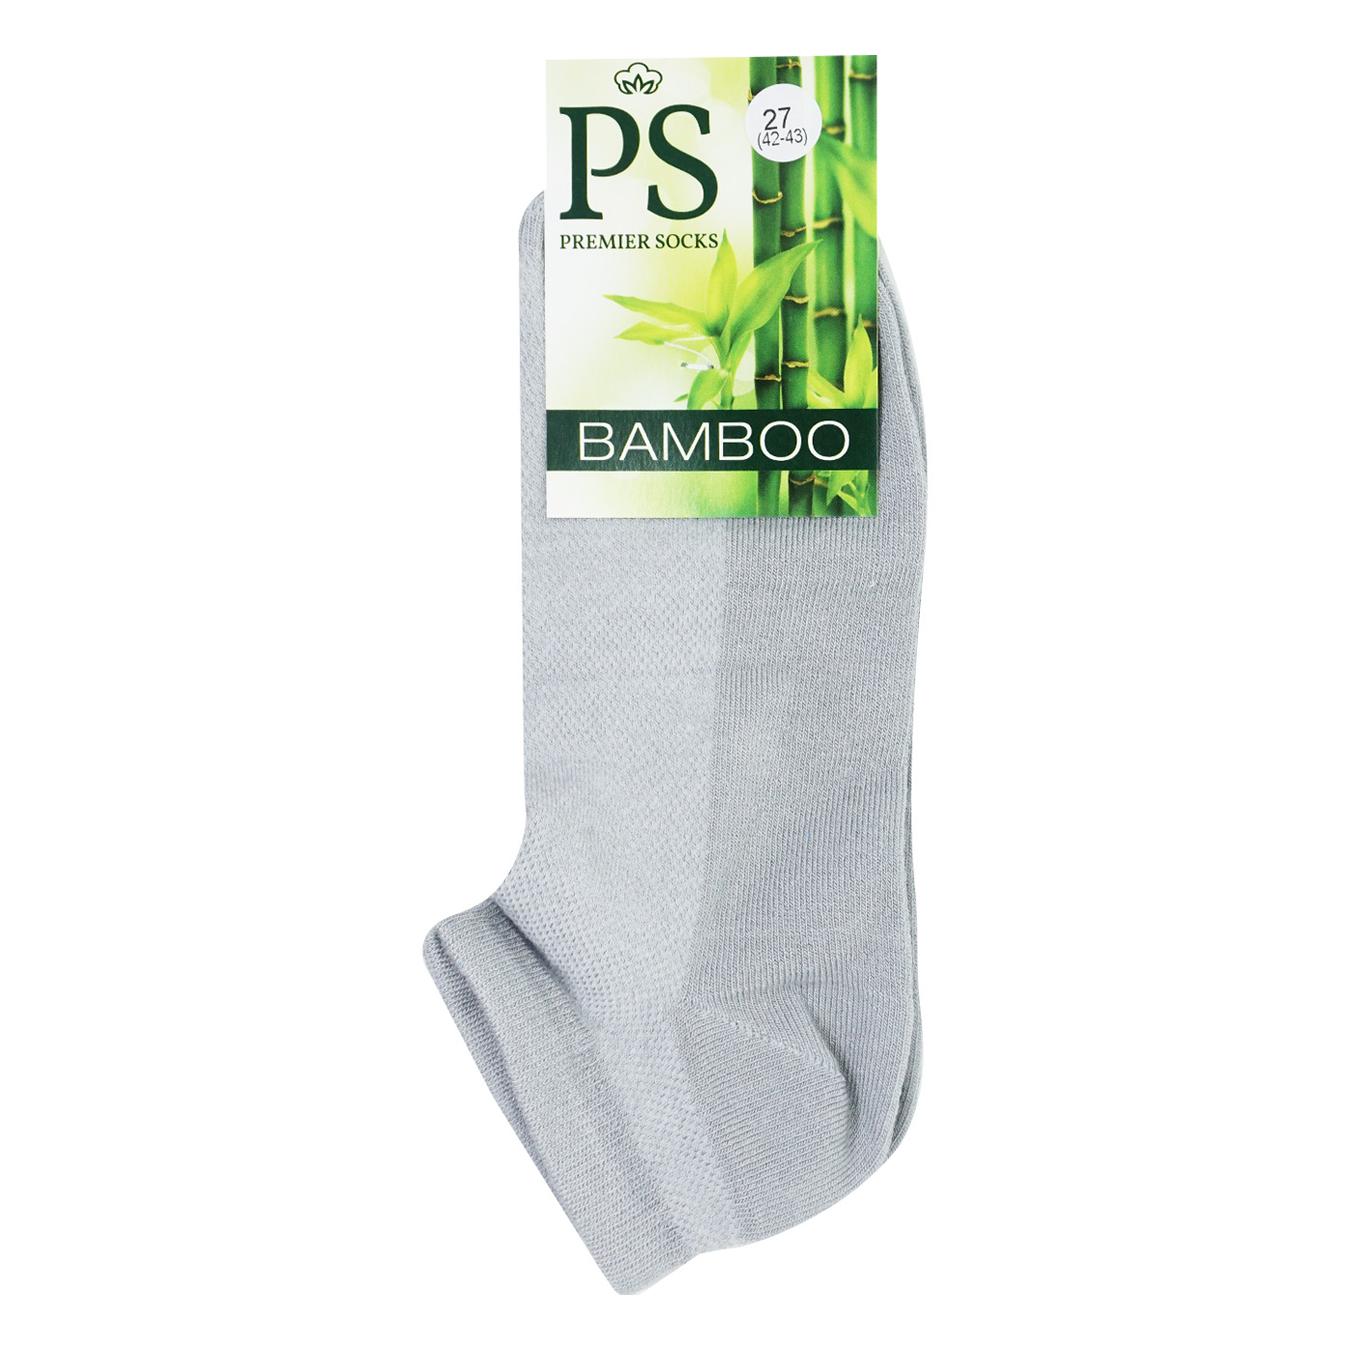 Носки мужские Premier Socks Bamboo серые короткие летние 27р.